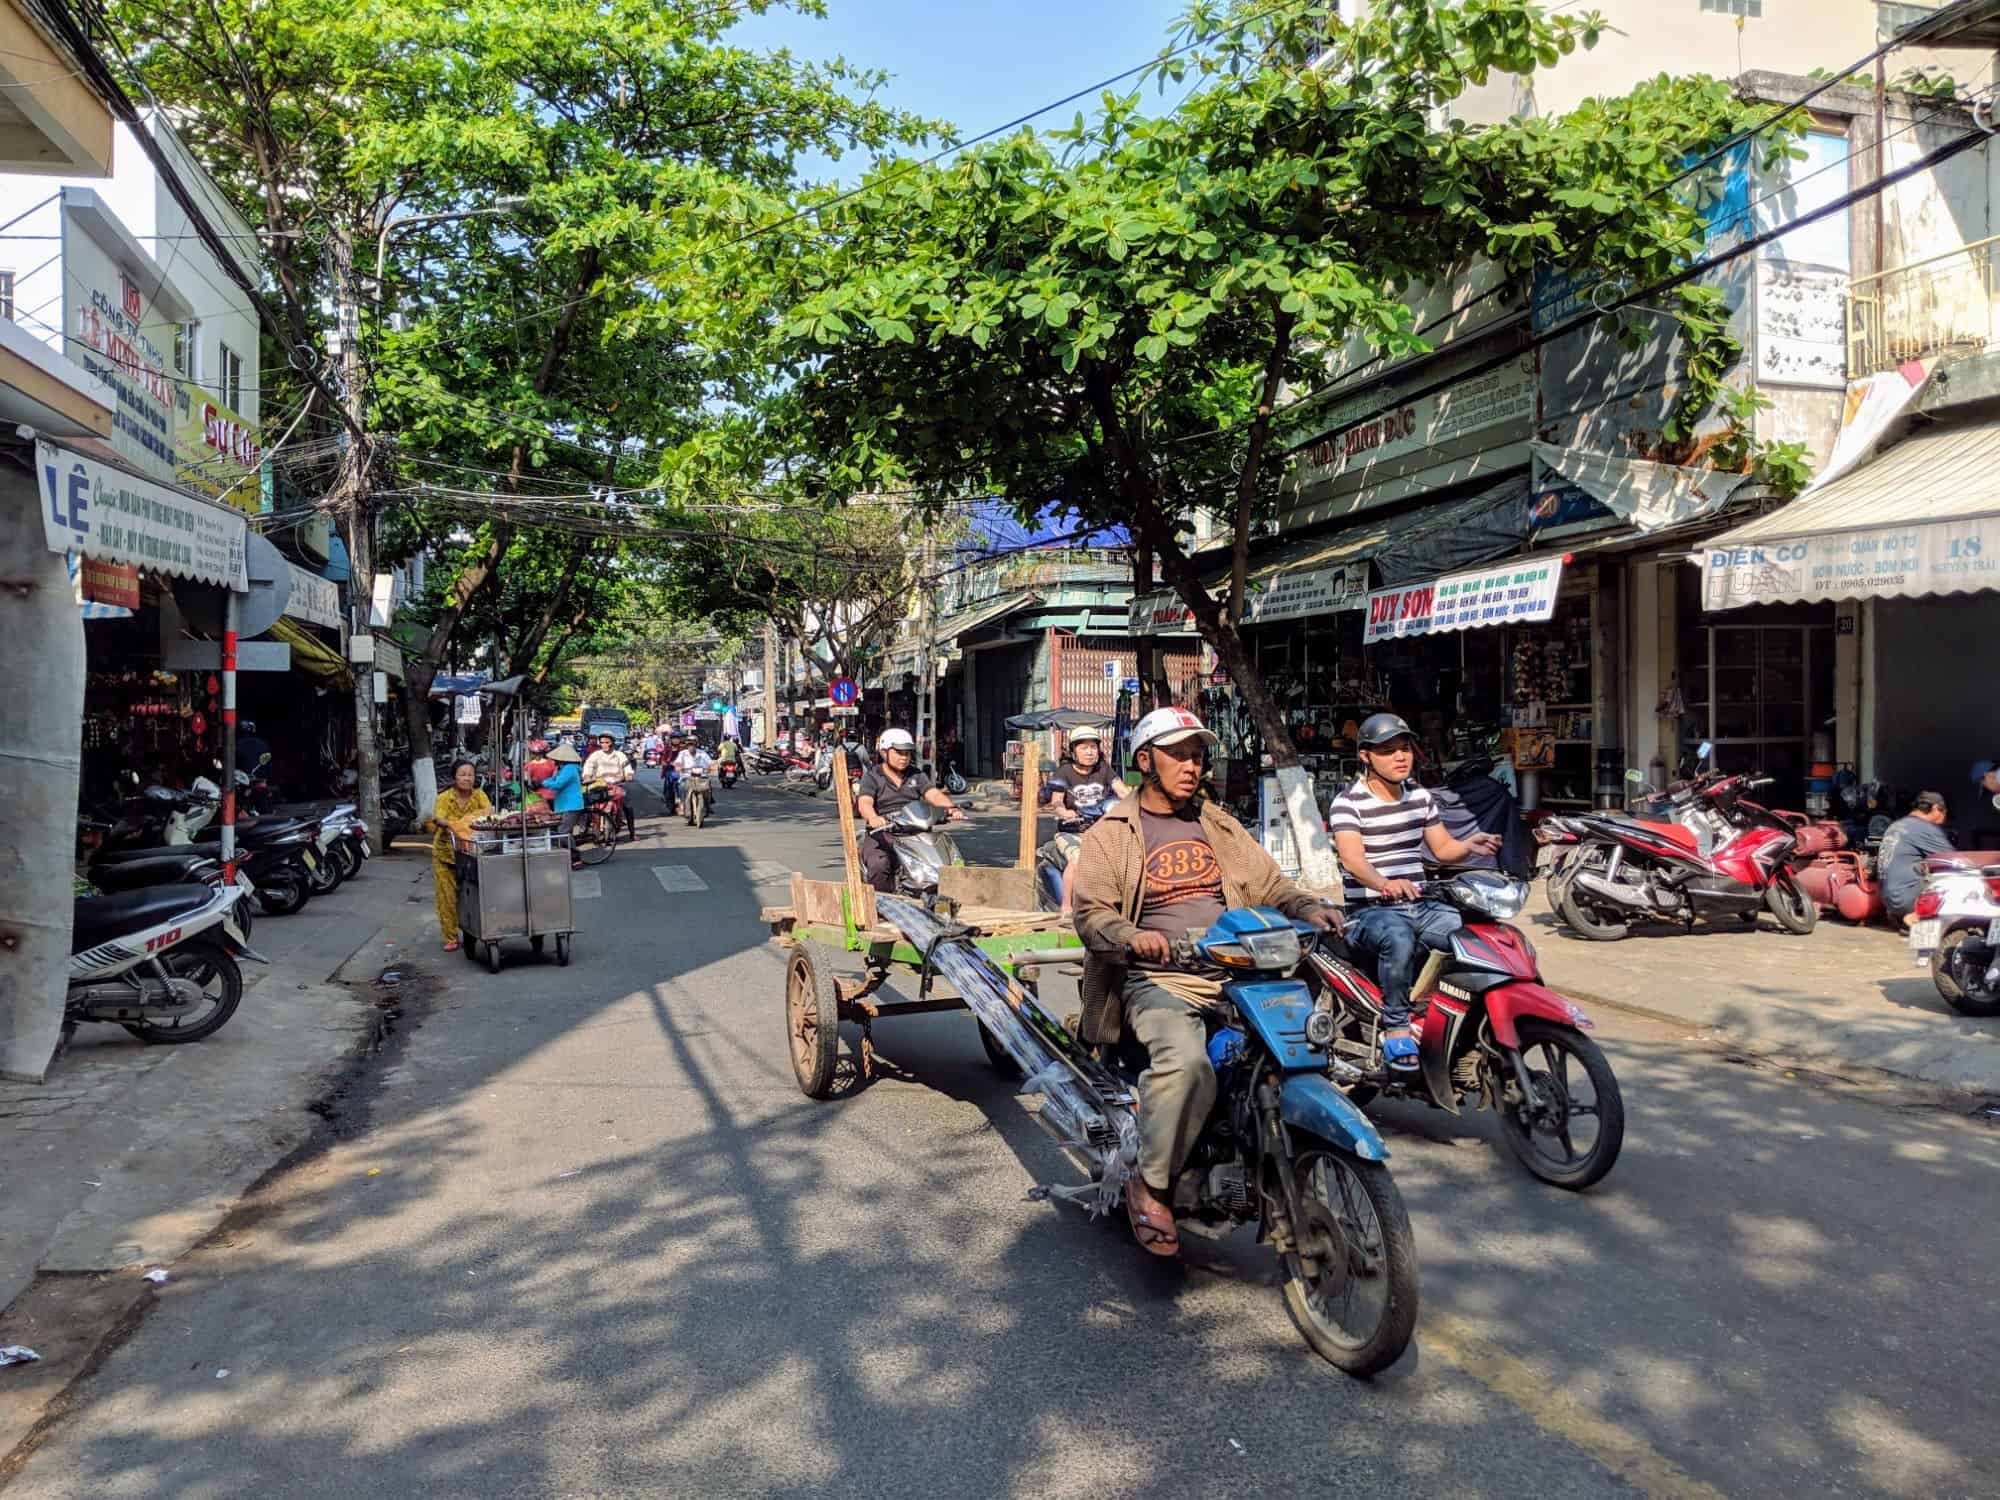 Danang street scene